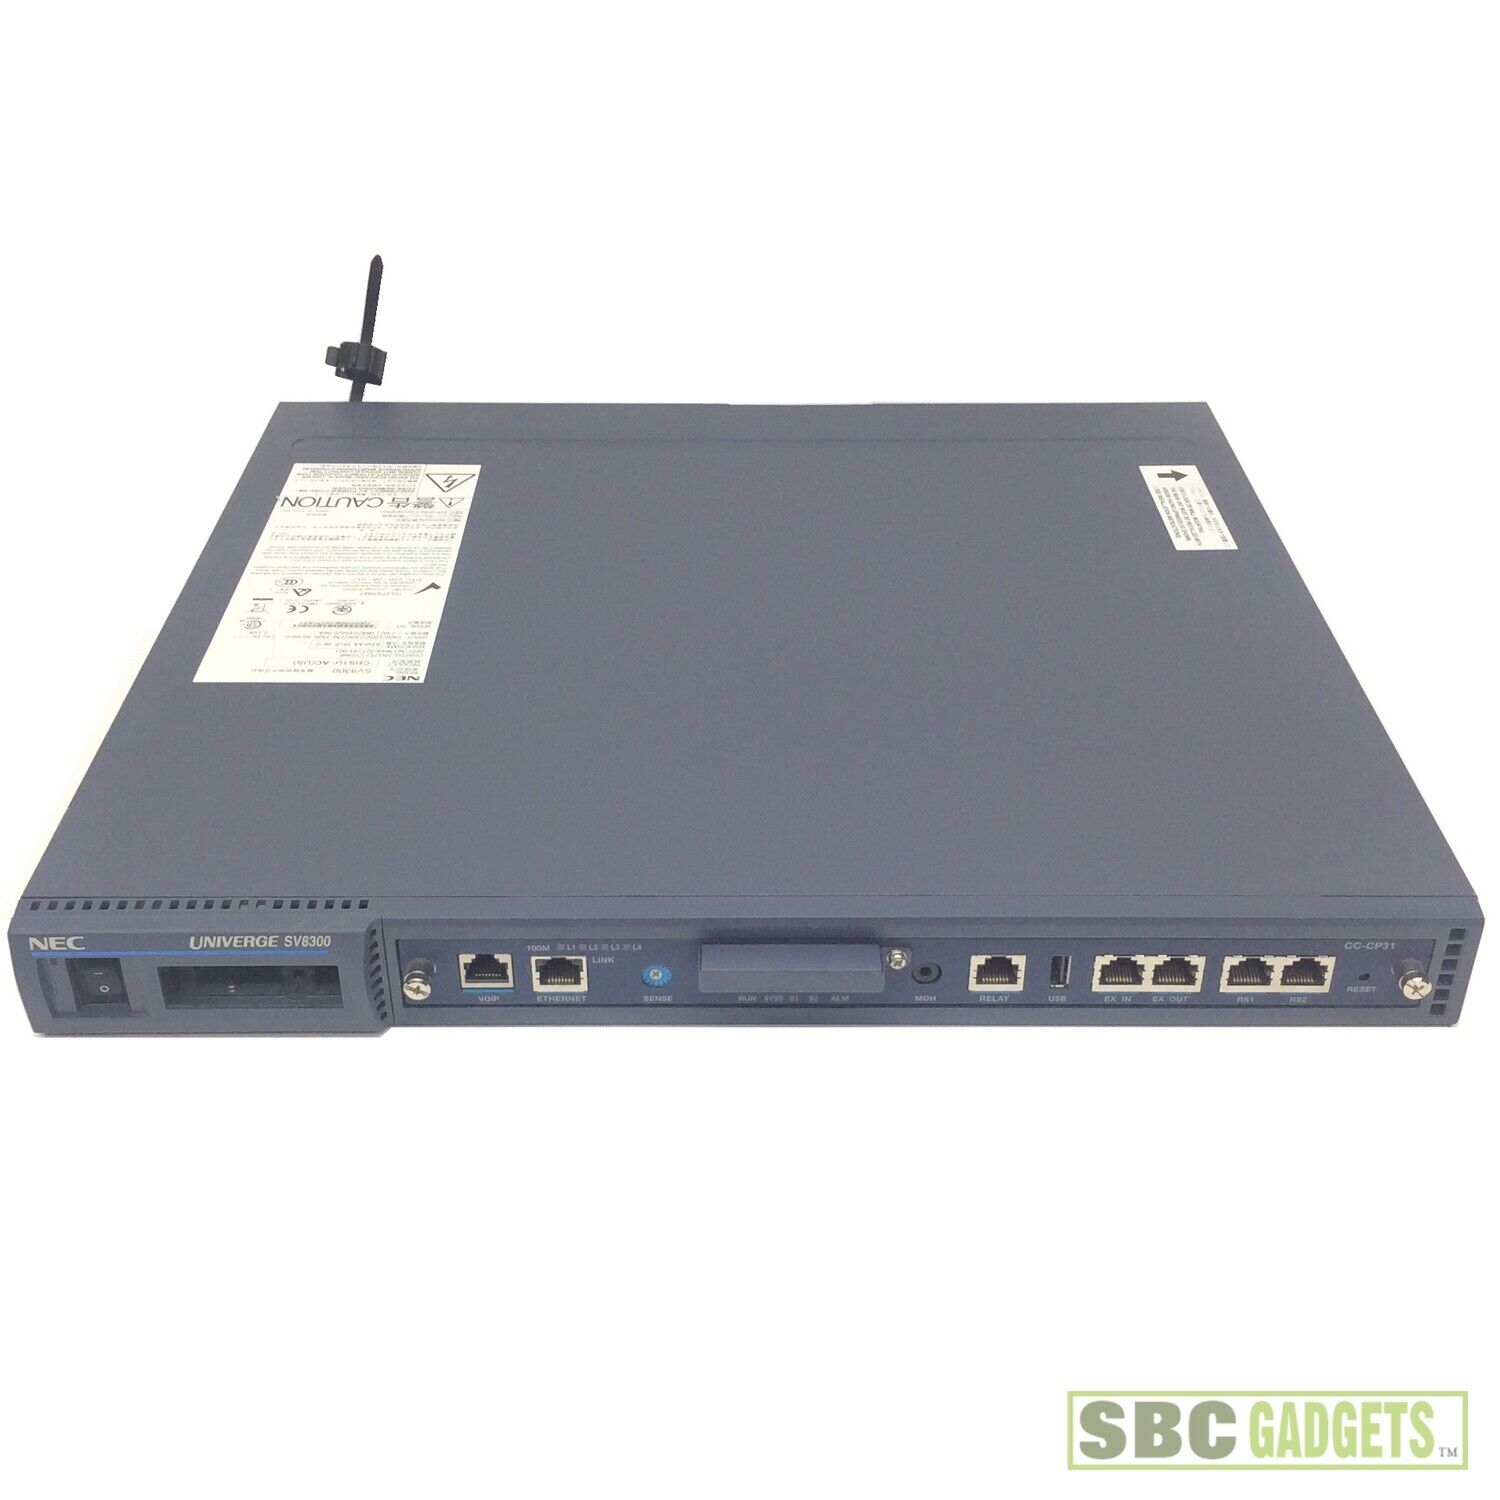 NEC Univerge SV8300 w/ CC-CP31 Controller CHS1U-AC(US) CYGMB